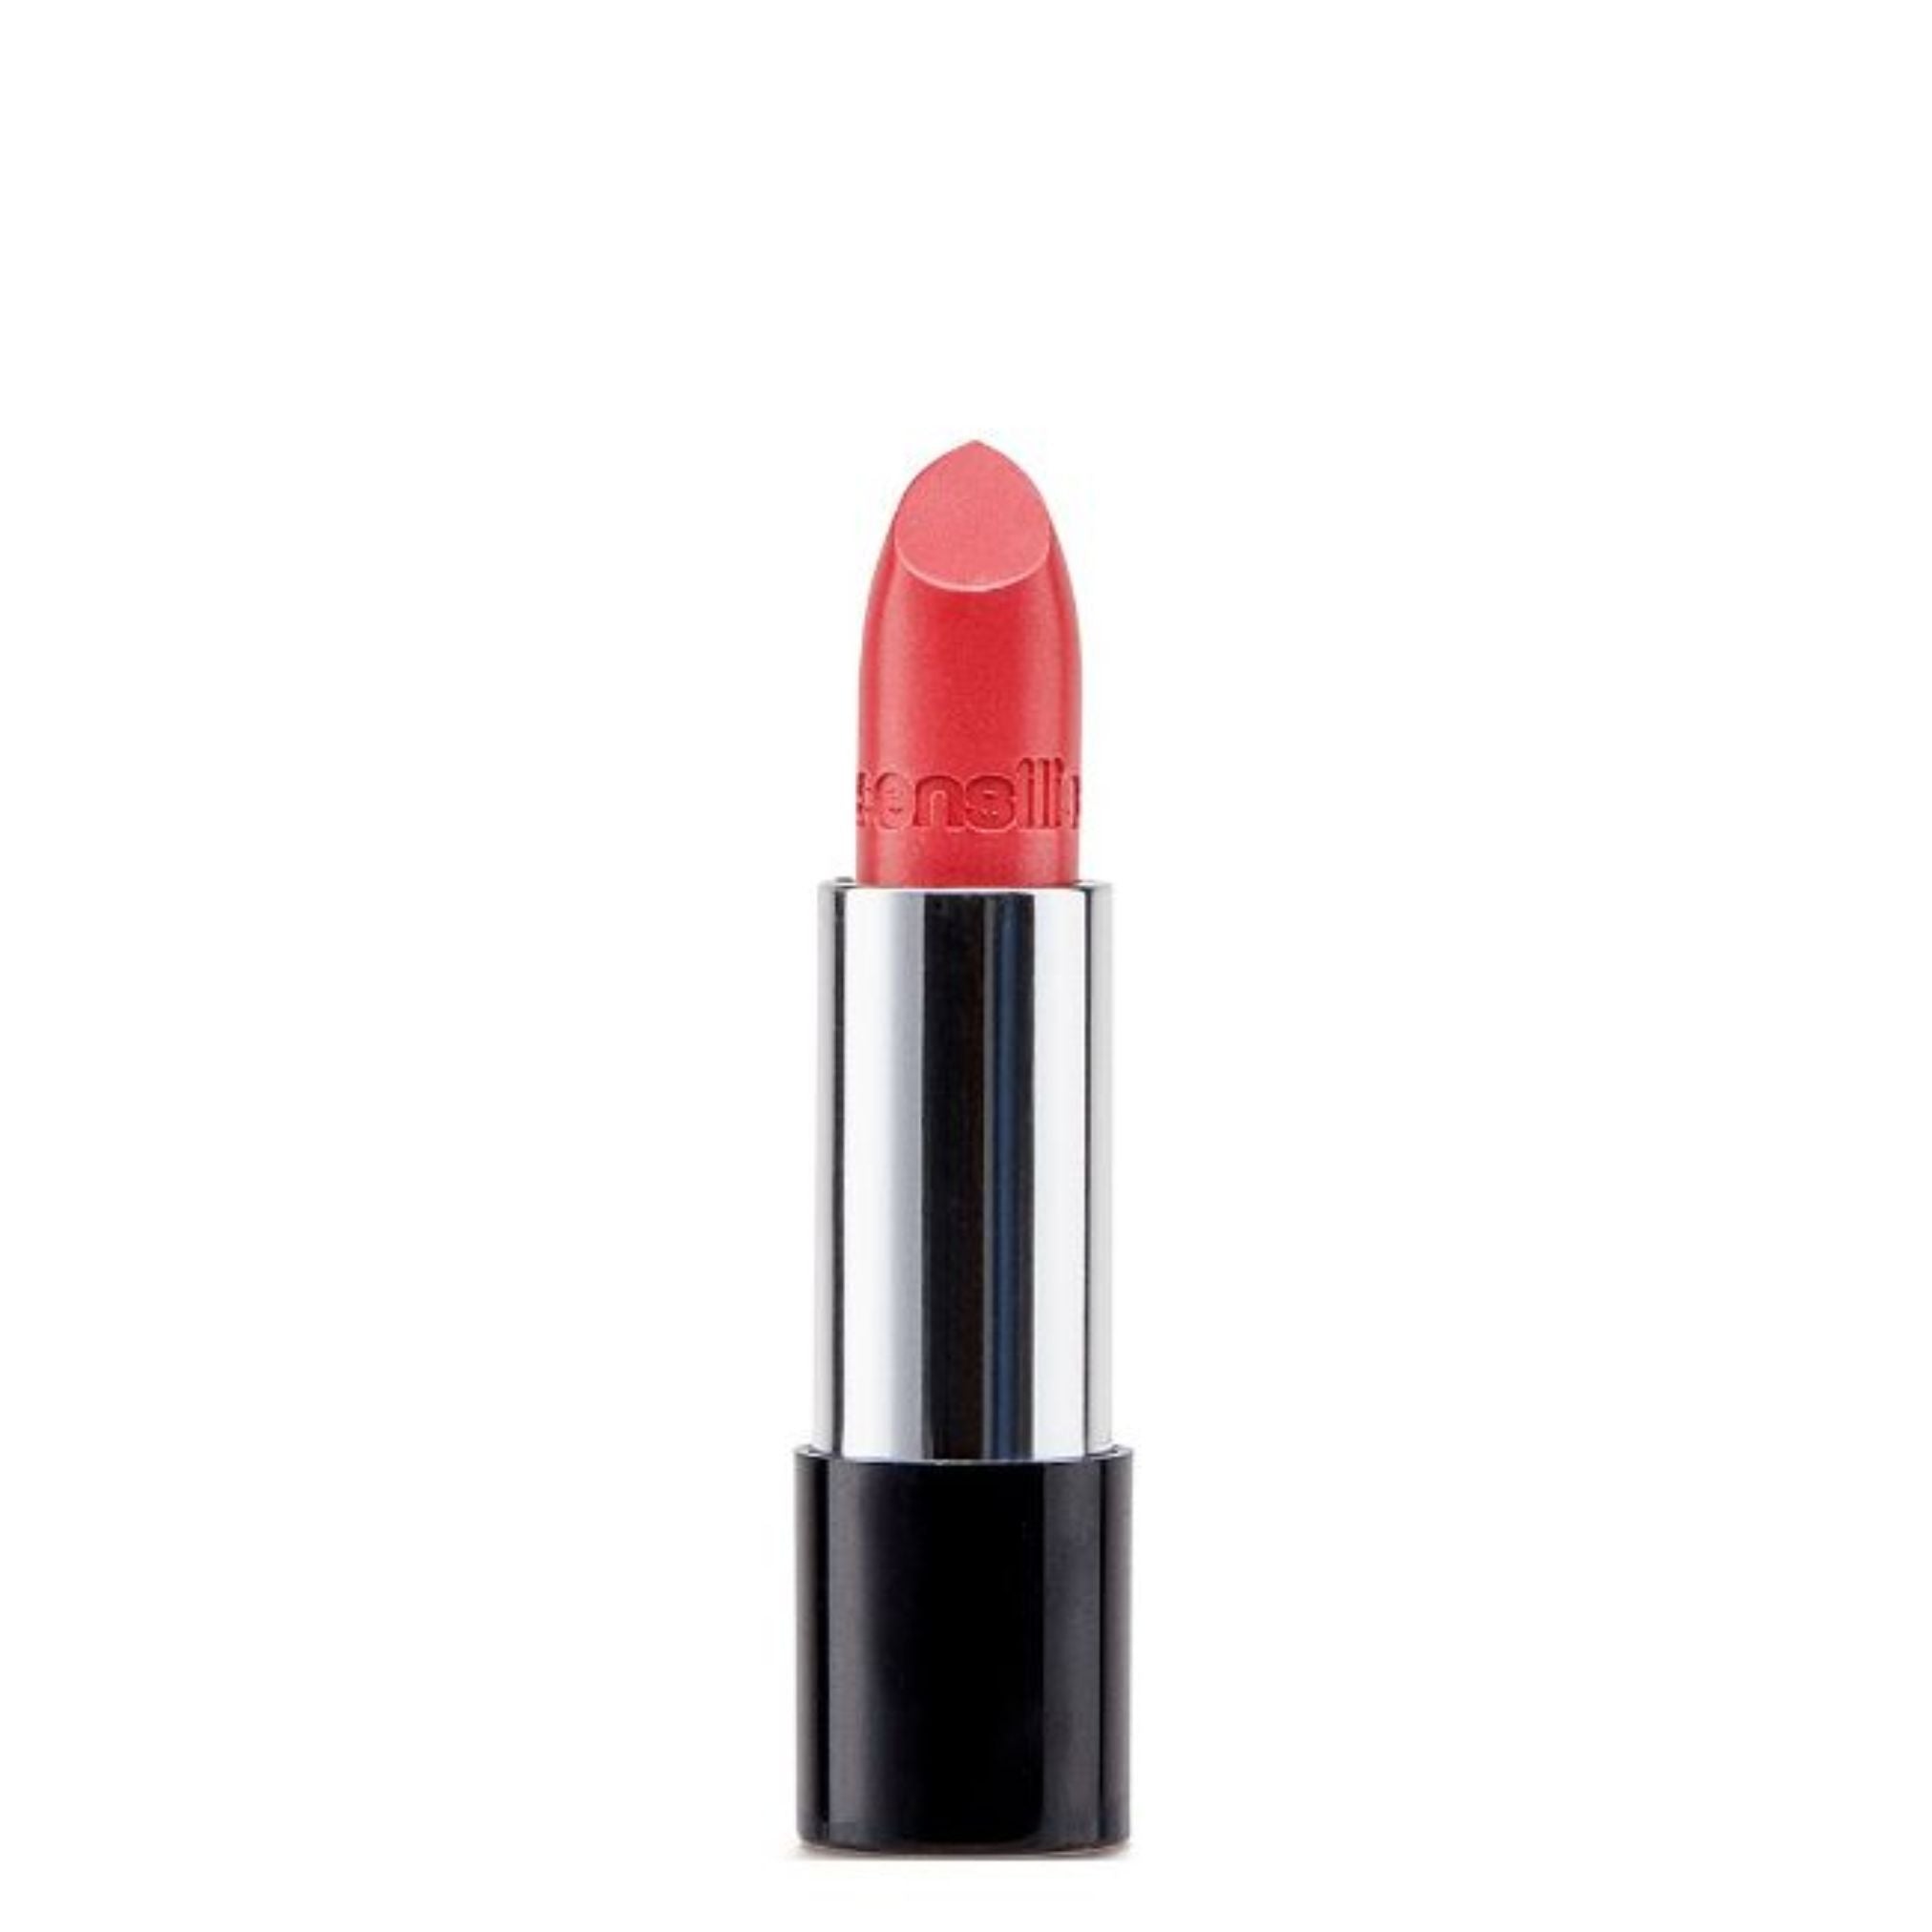 Sensilis Velvet Satin Lipstick 209 Rose 3,5ml